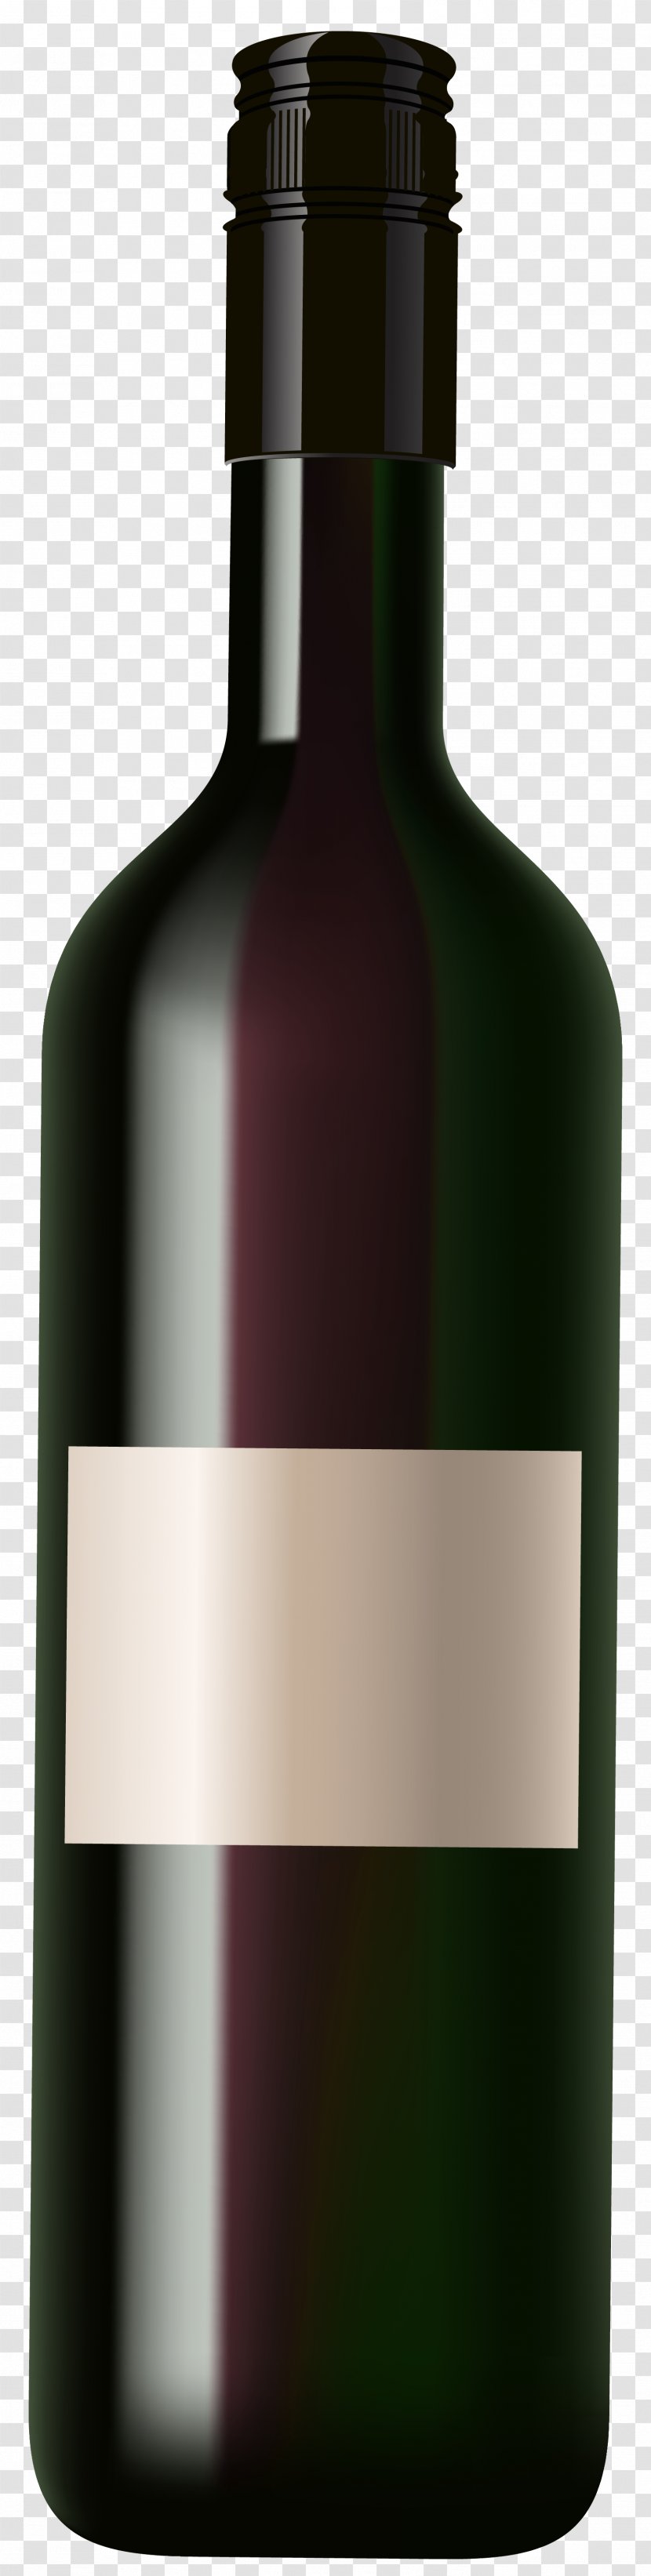 Red Wine Beer Champagne - Bottle Clip Art Image Transparent PNG